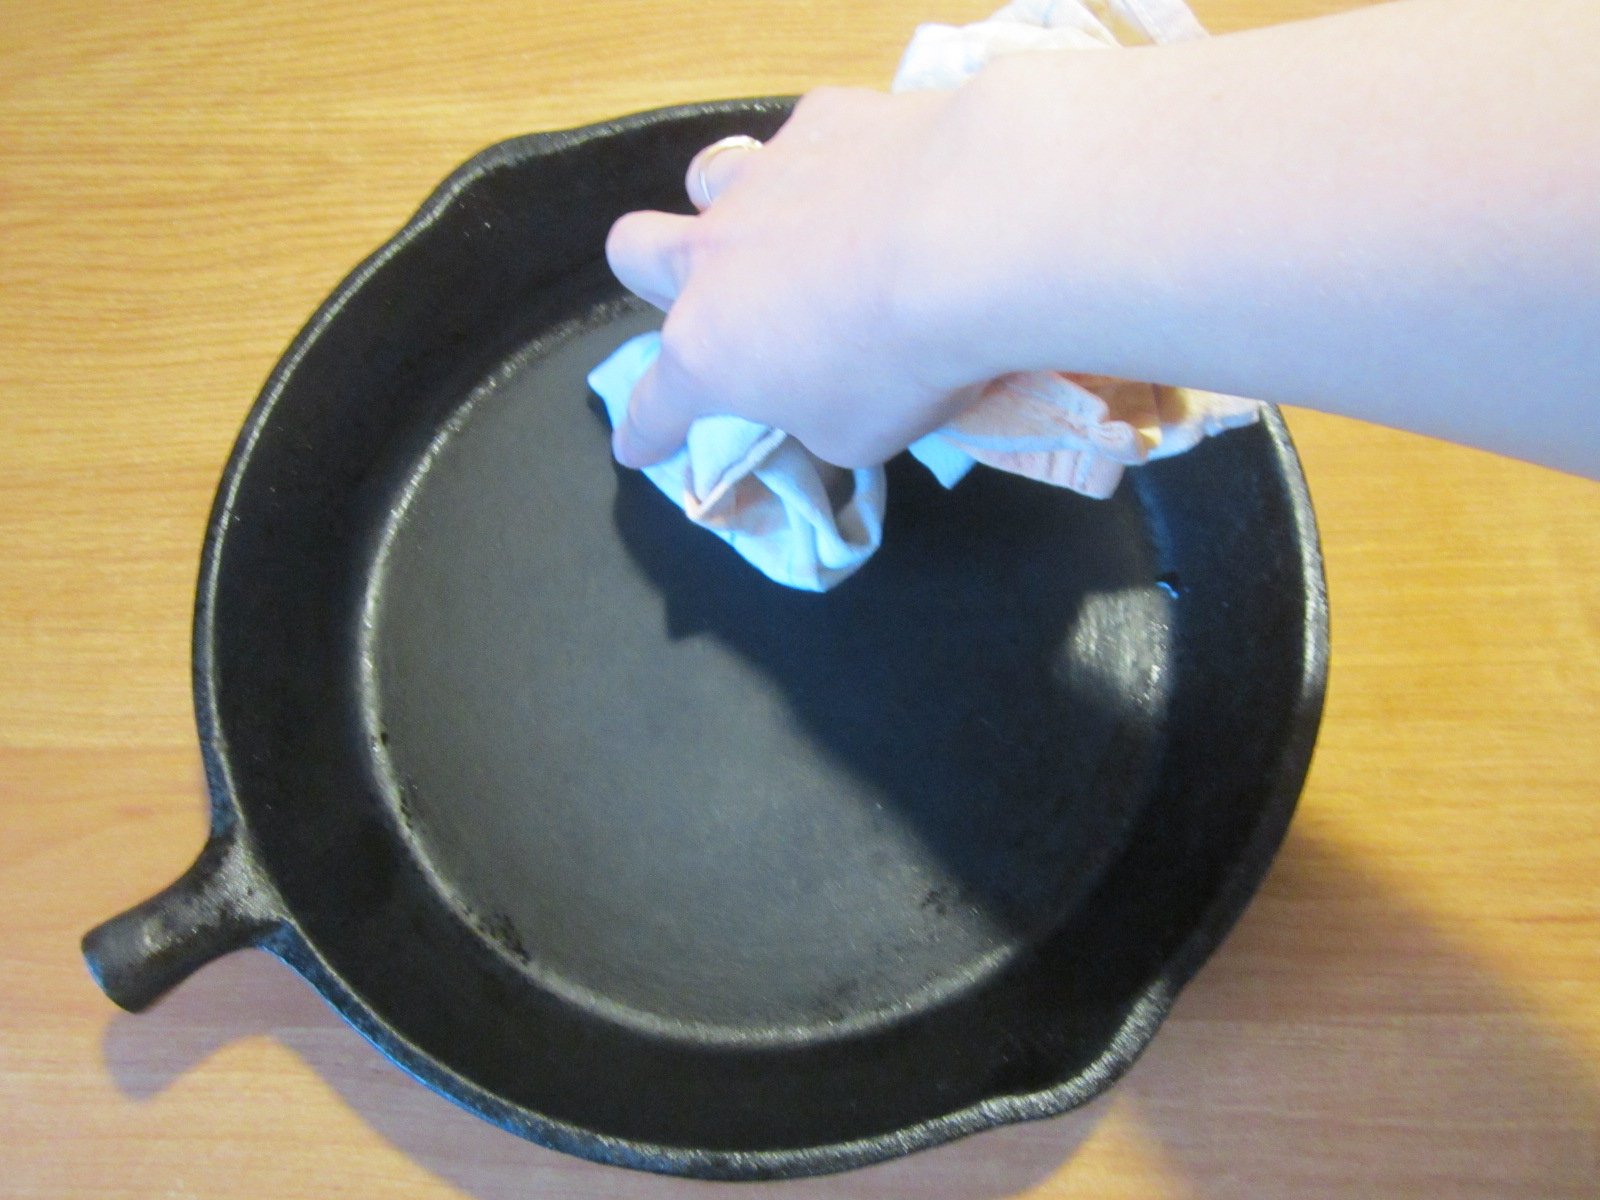 Чугунная сковорода перед первым использованием. Прокаленная чугунная сковорода. Соль в чугунную сковороду и прокалить. Прокалка чугунной сковороды с солью. Подготовка чугунной сковороды.